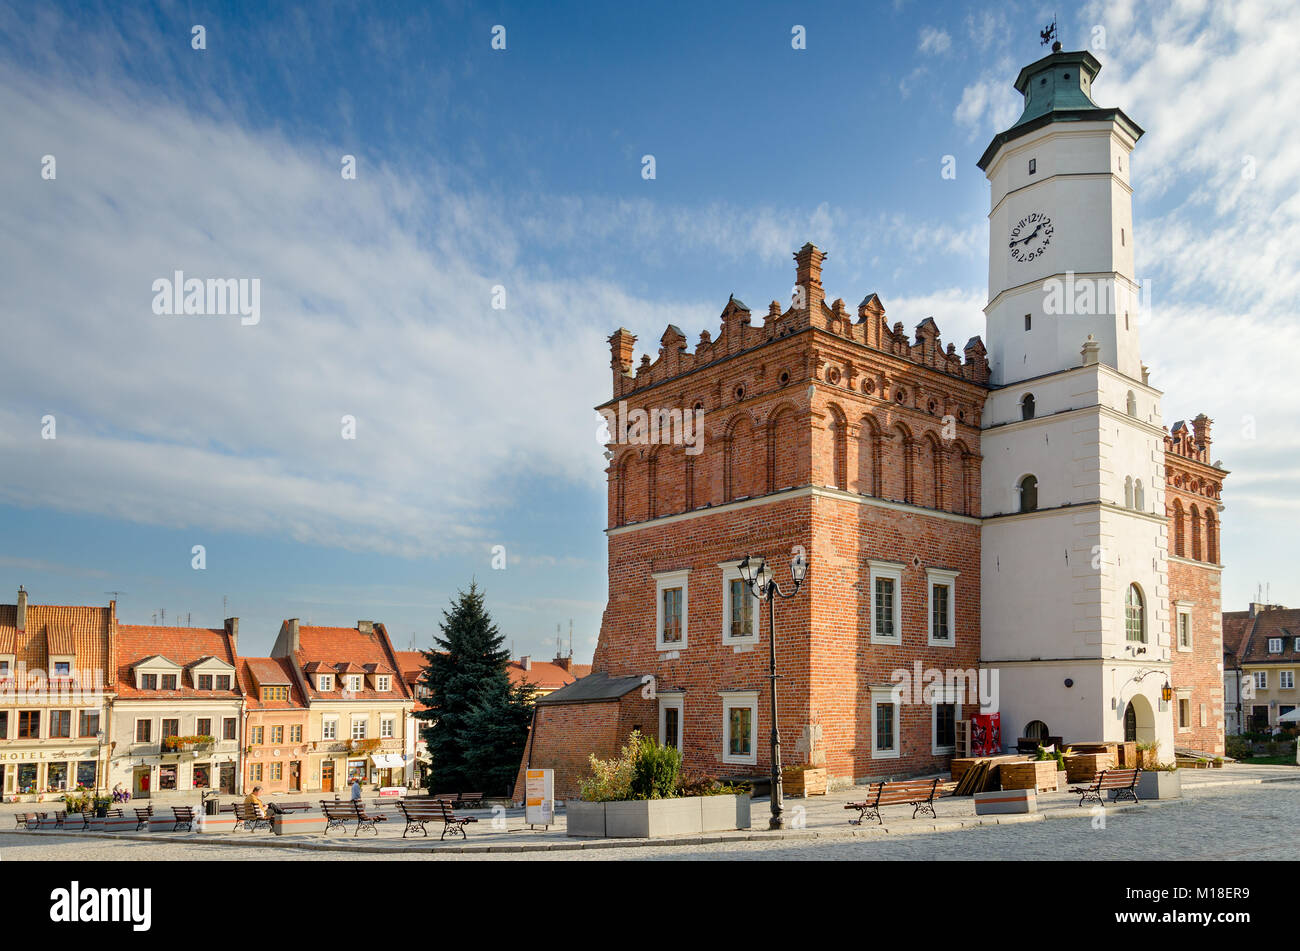 Rathaus am Alten Markt, Sandomierz, swietokrzyskie Westpommern, Polen, Europa. Stockfoto